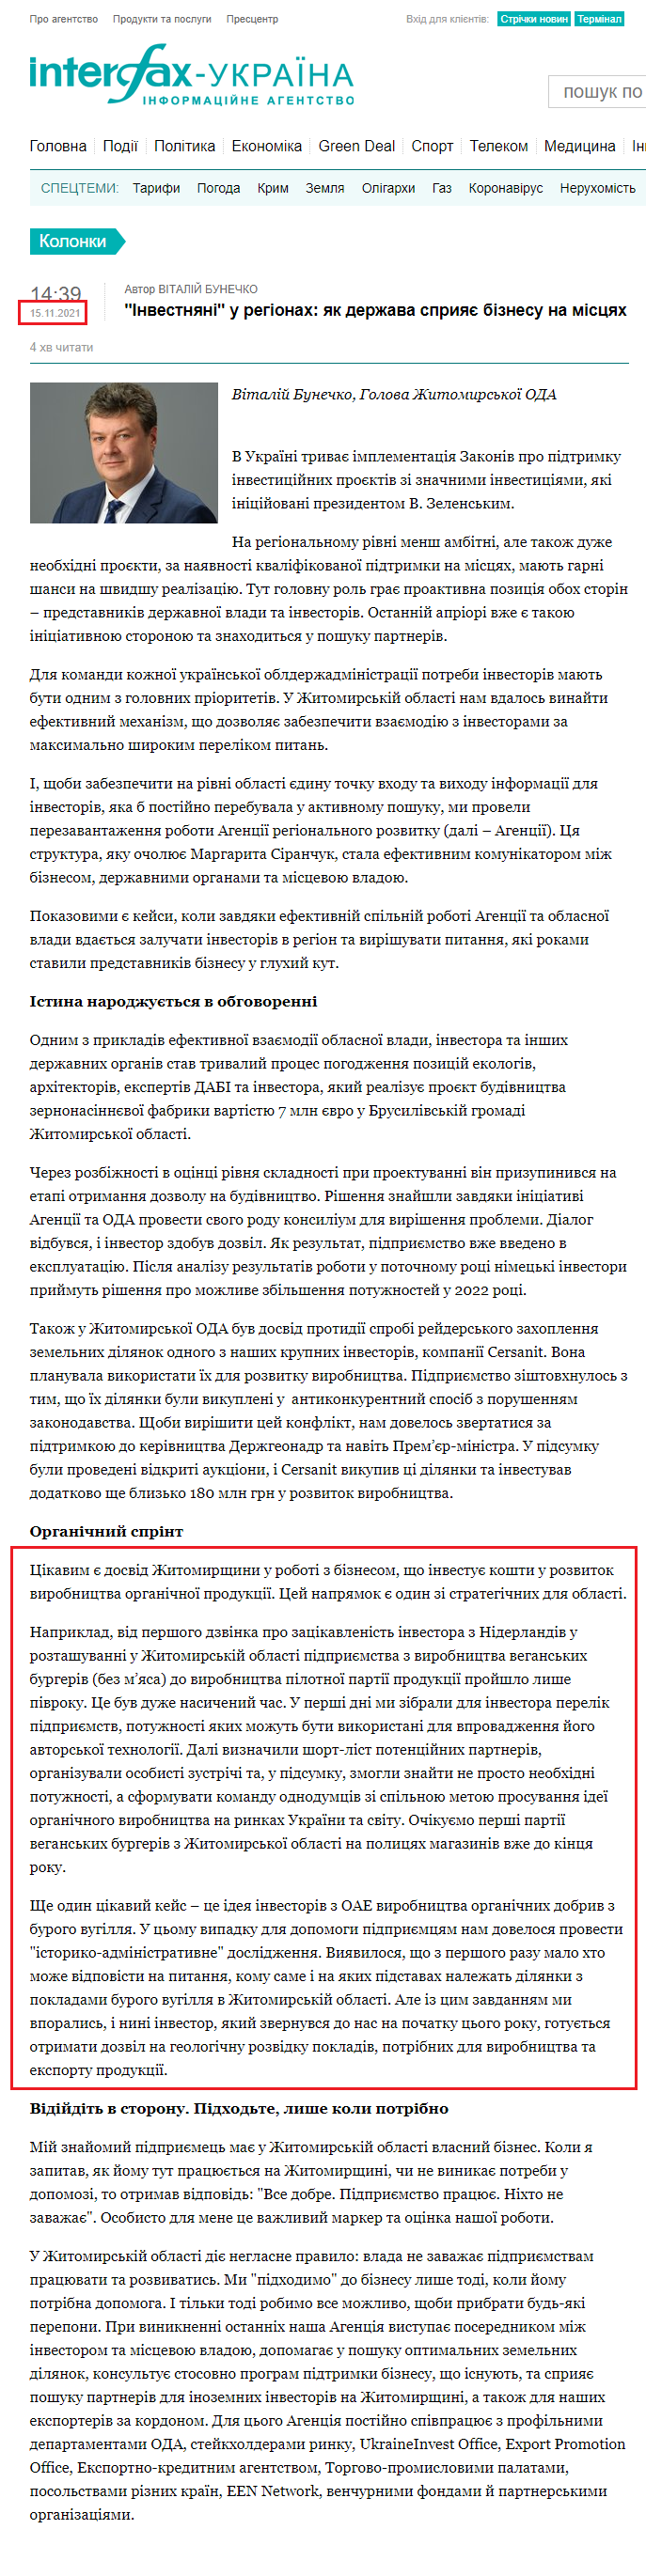 https://ua.interfax.com.ua/news/blog/779768.html